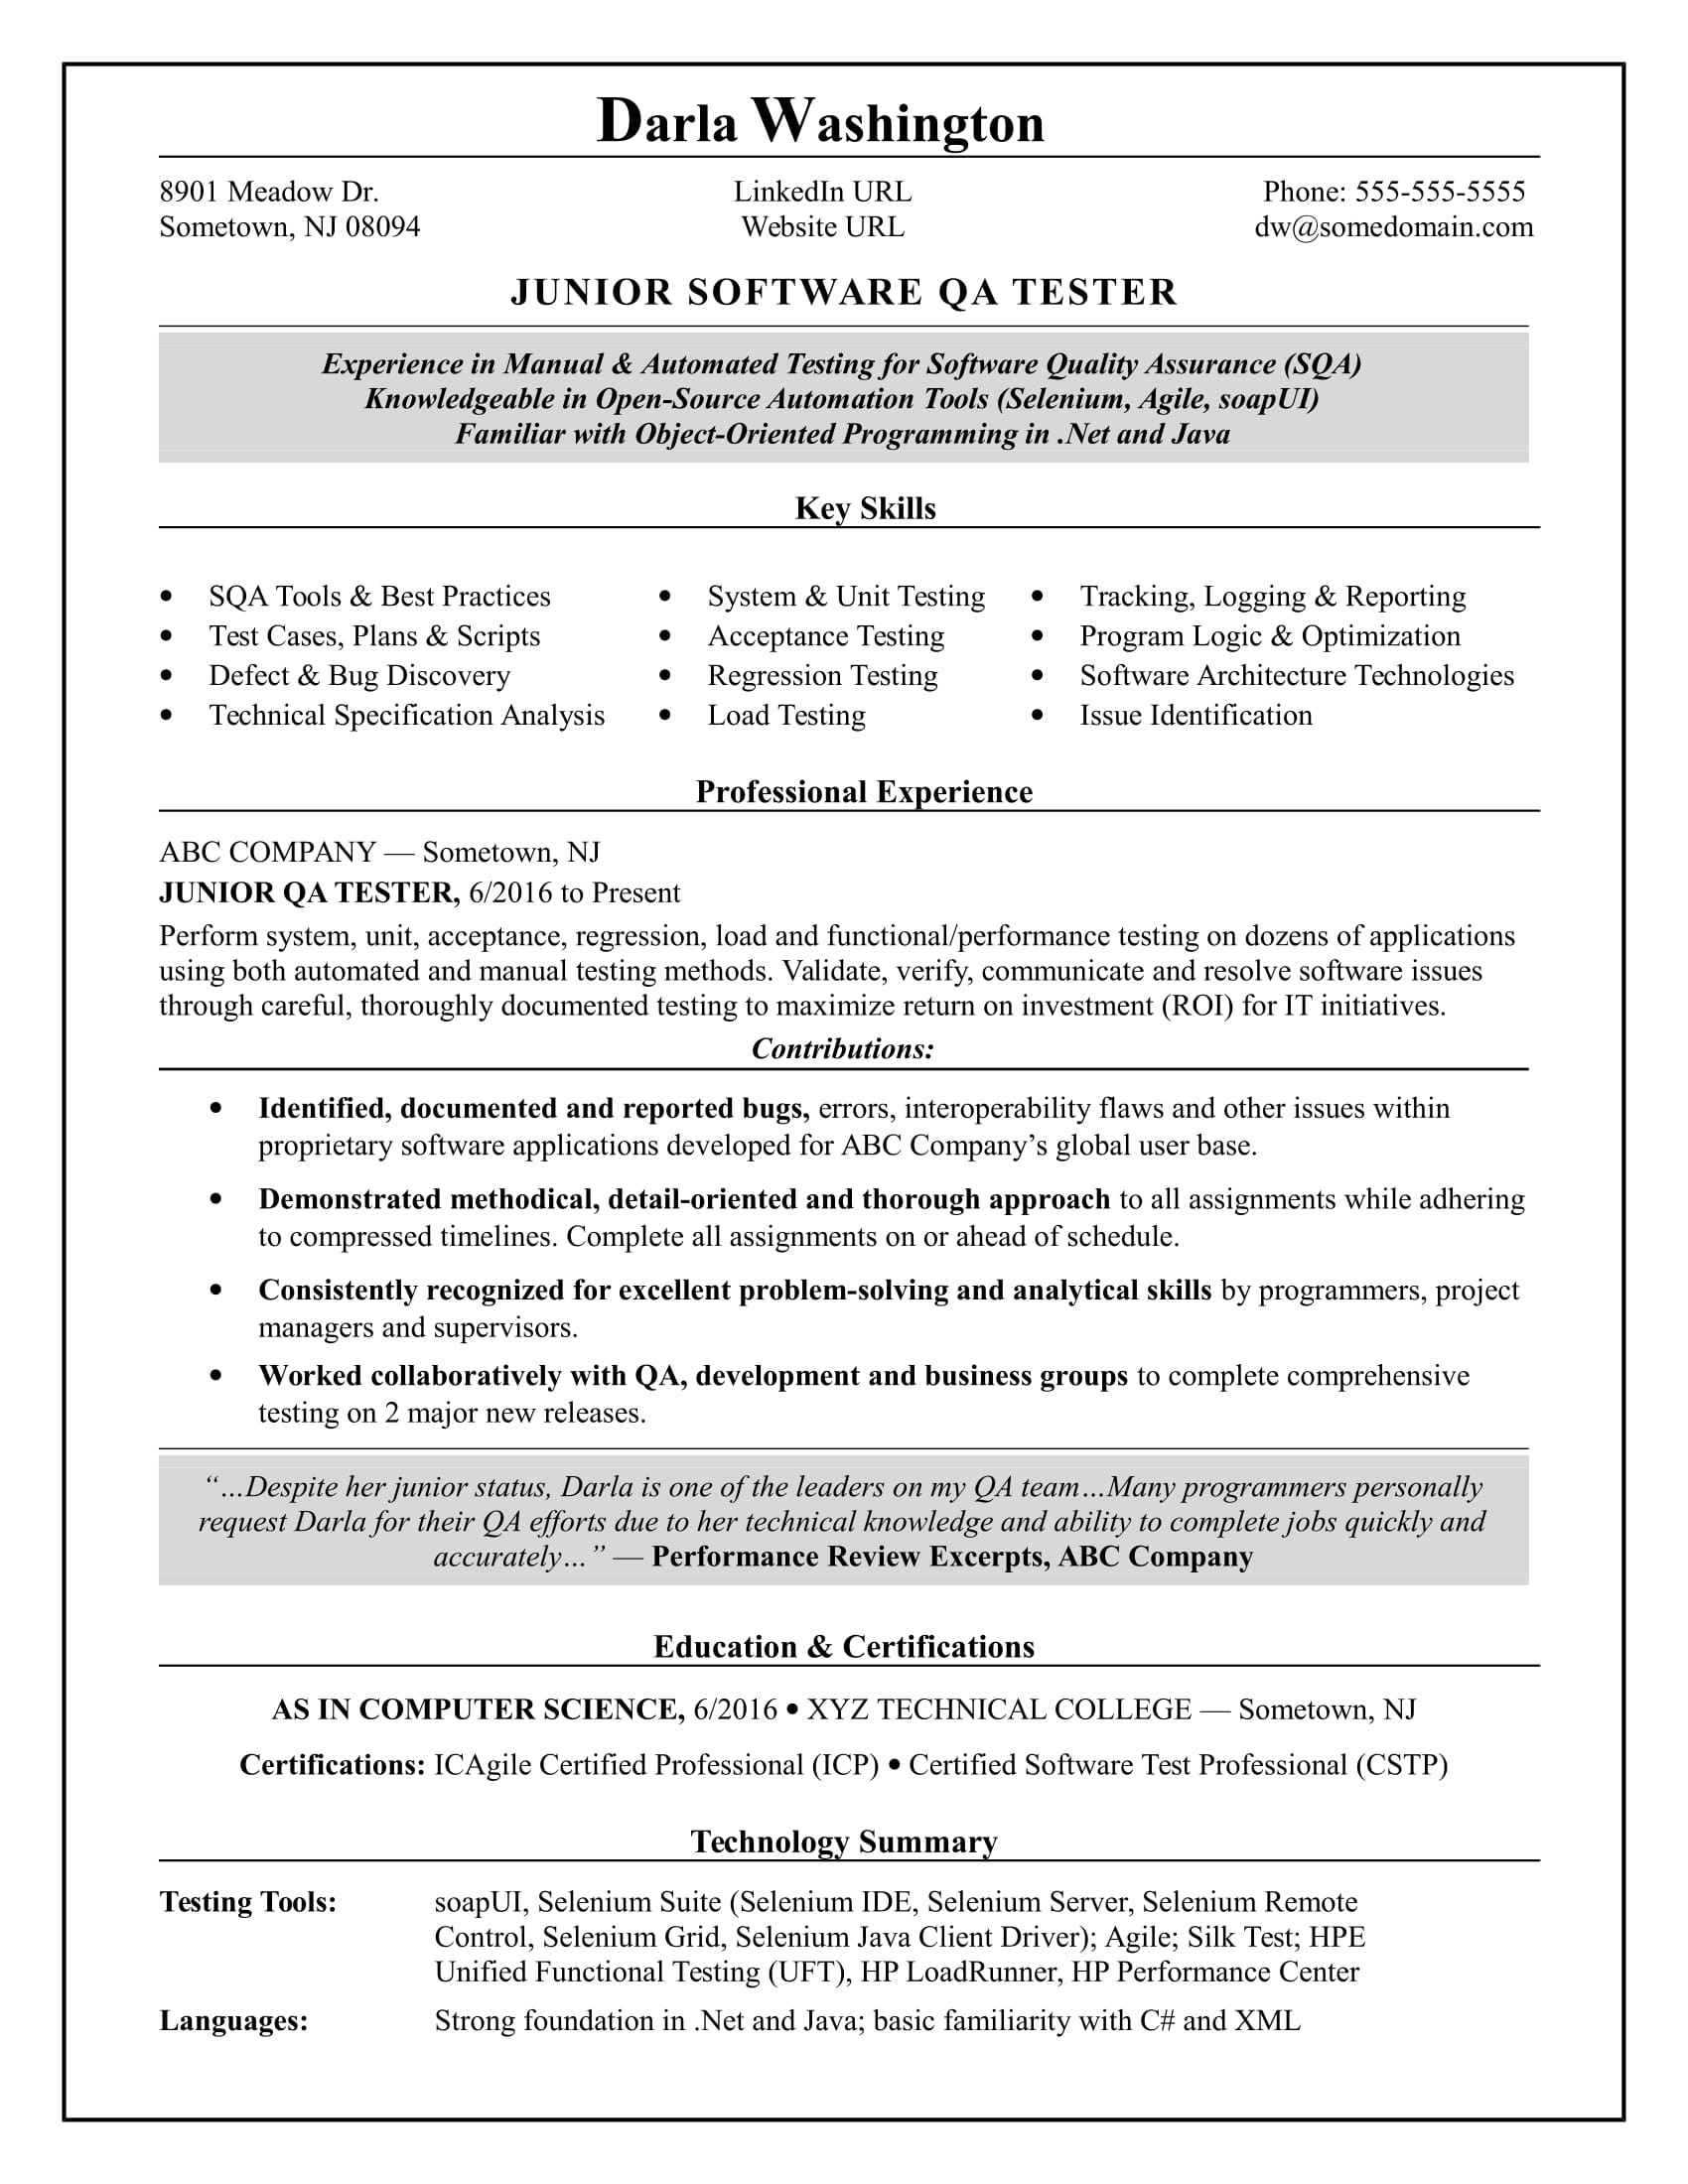 Selenium Testing Resume Sample for 2 Years Experience Entry-level software Tester Resume Monster.com